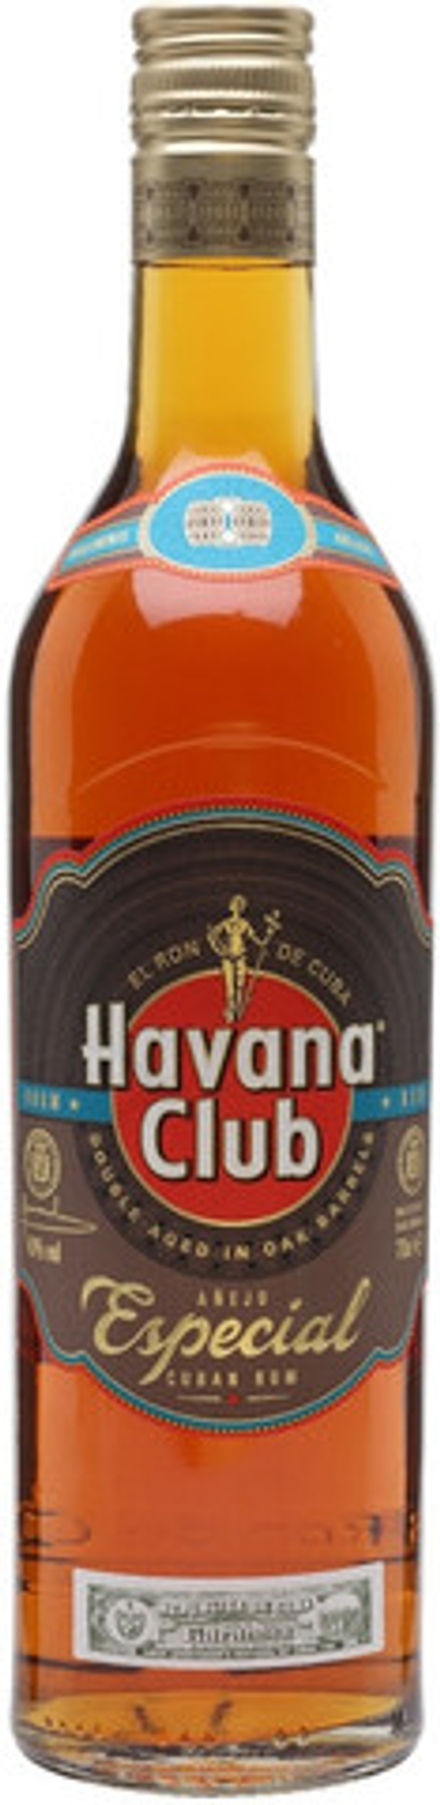 Ром Havana Club Anejo Especial, 0.7 л